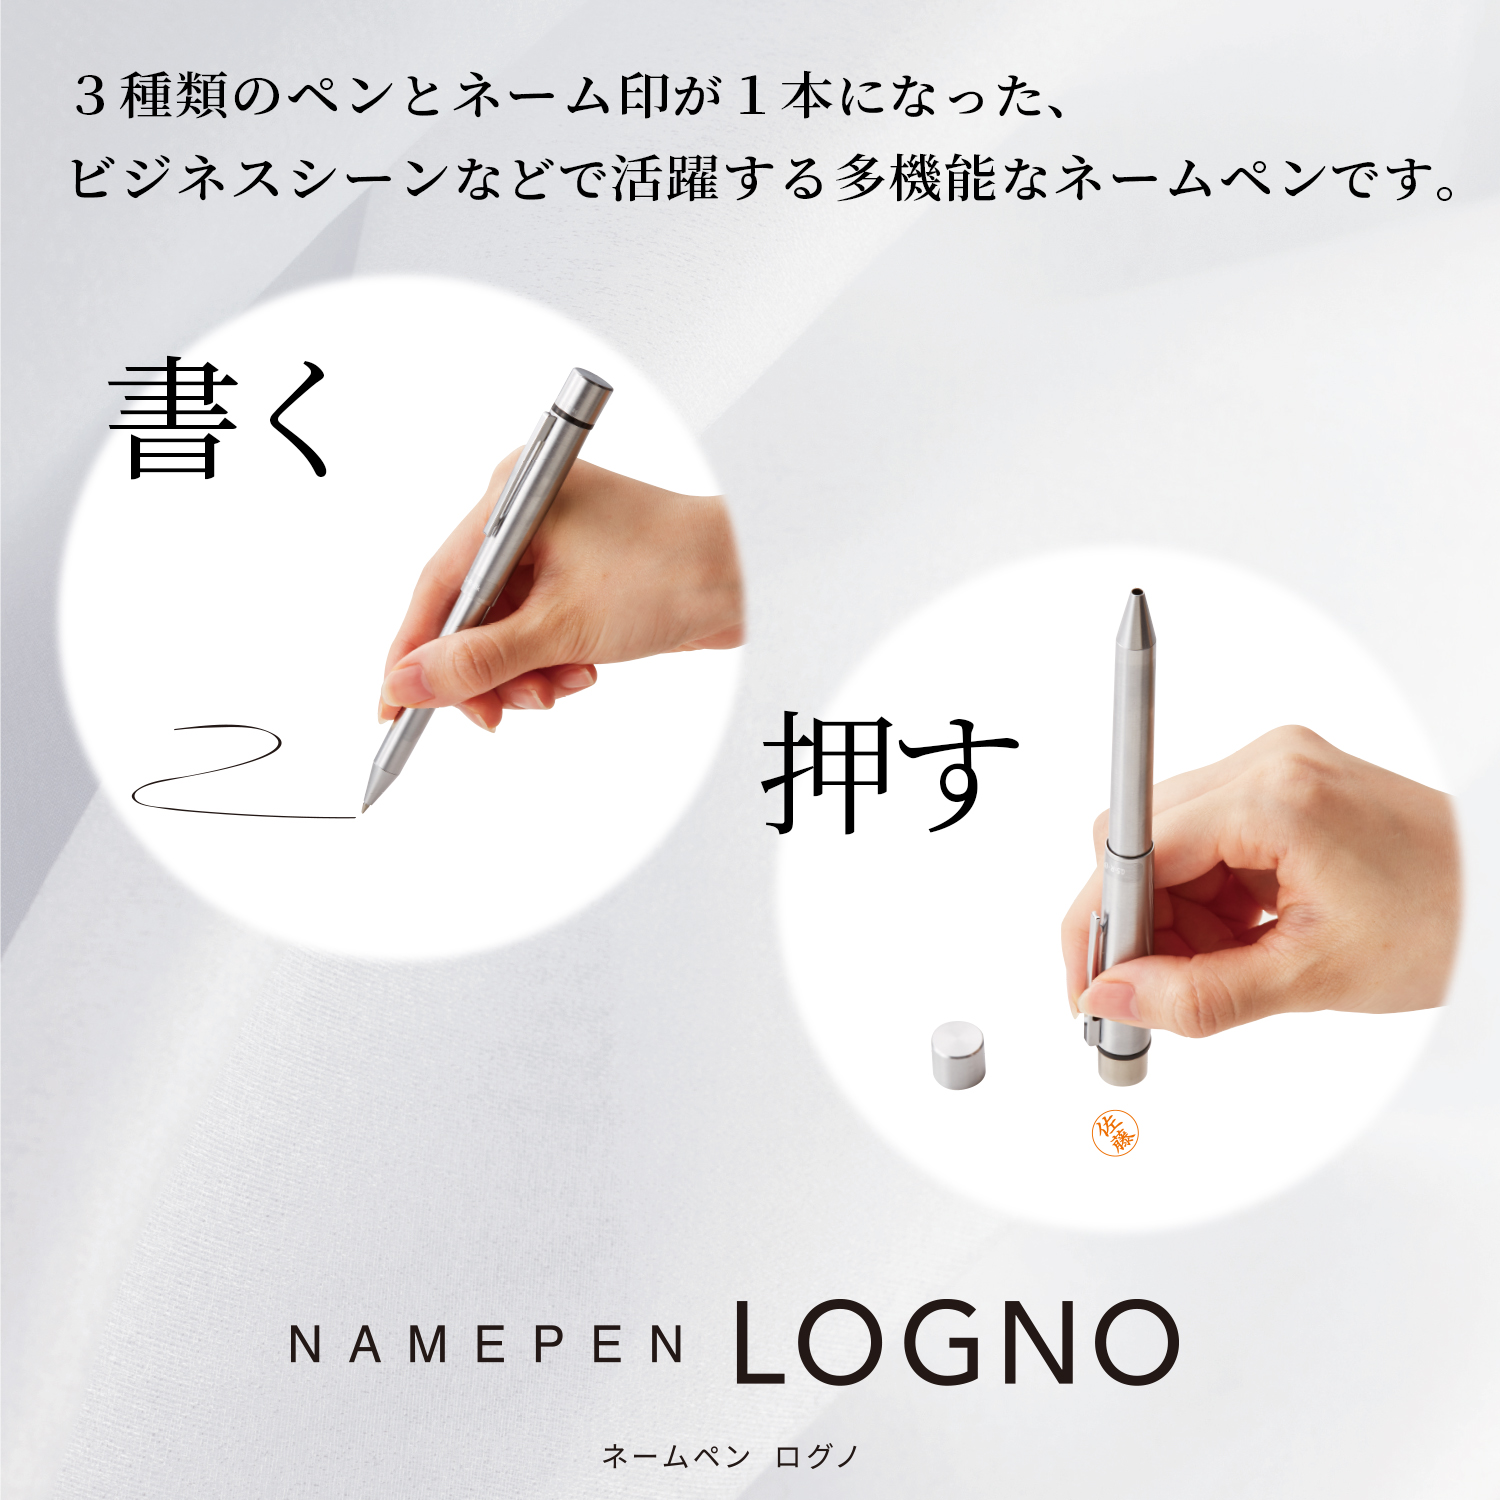 ネームペン ログノ【既製品】